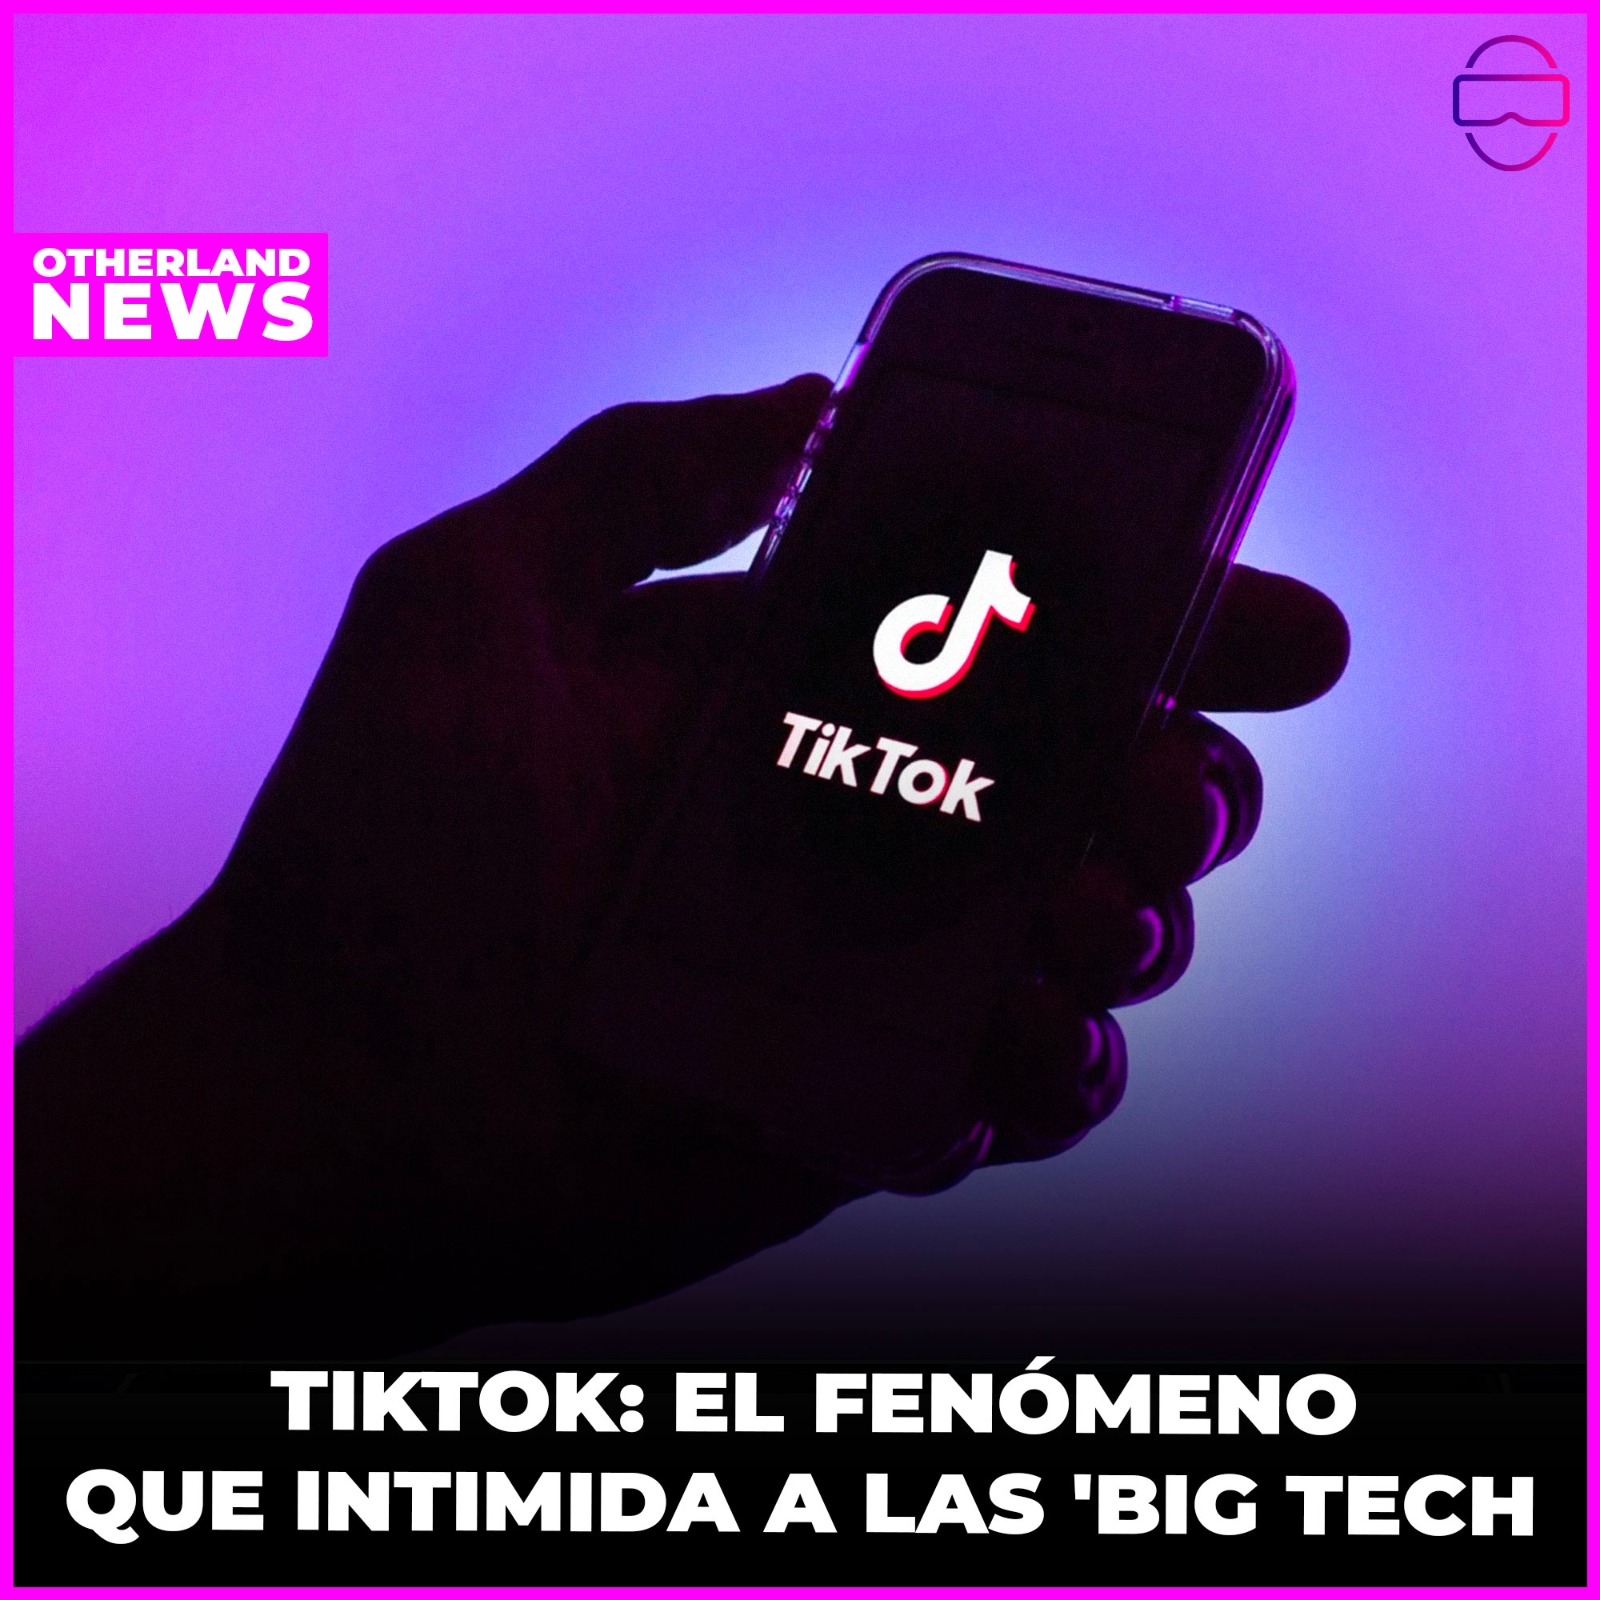 OTHERLAND : TikTok: El ascenso imparable de la red social para adolescentes que intimida a las 'Big Tech' y arrasa en ingresos publicitarios